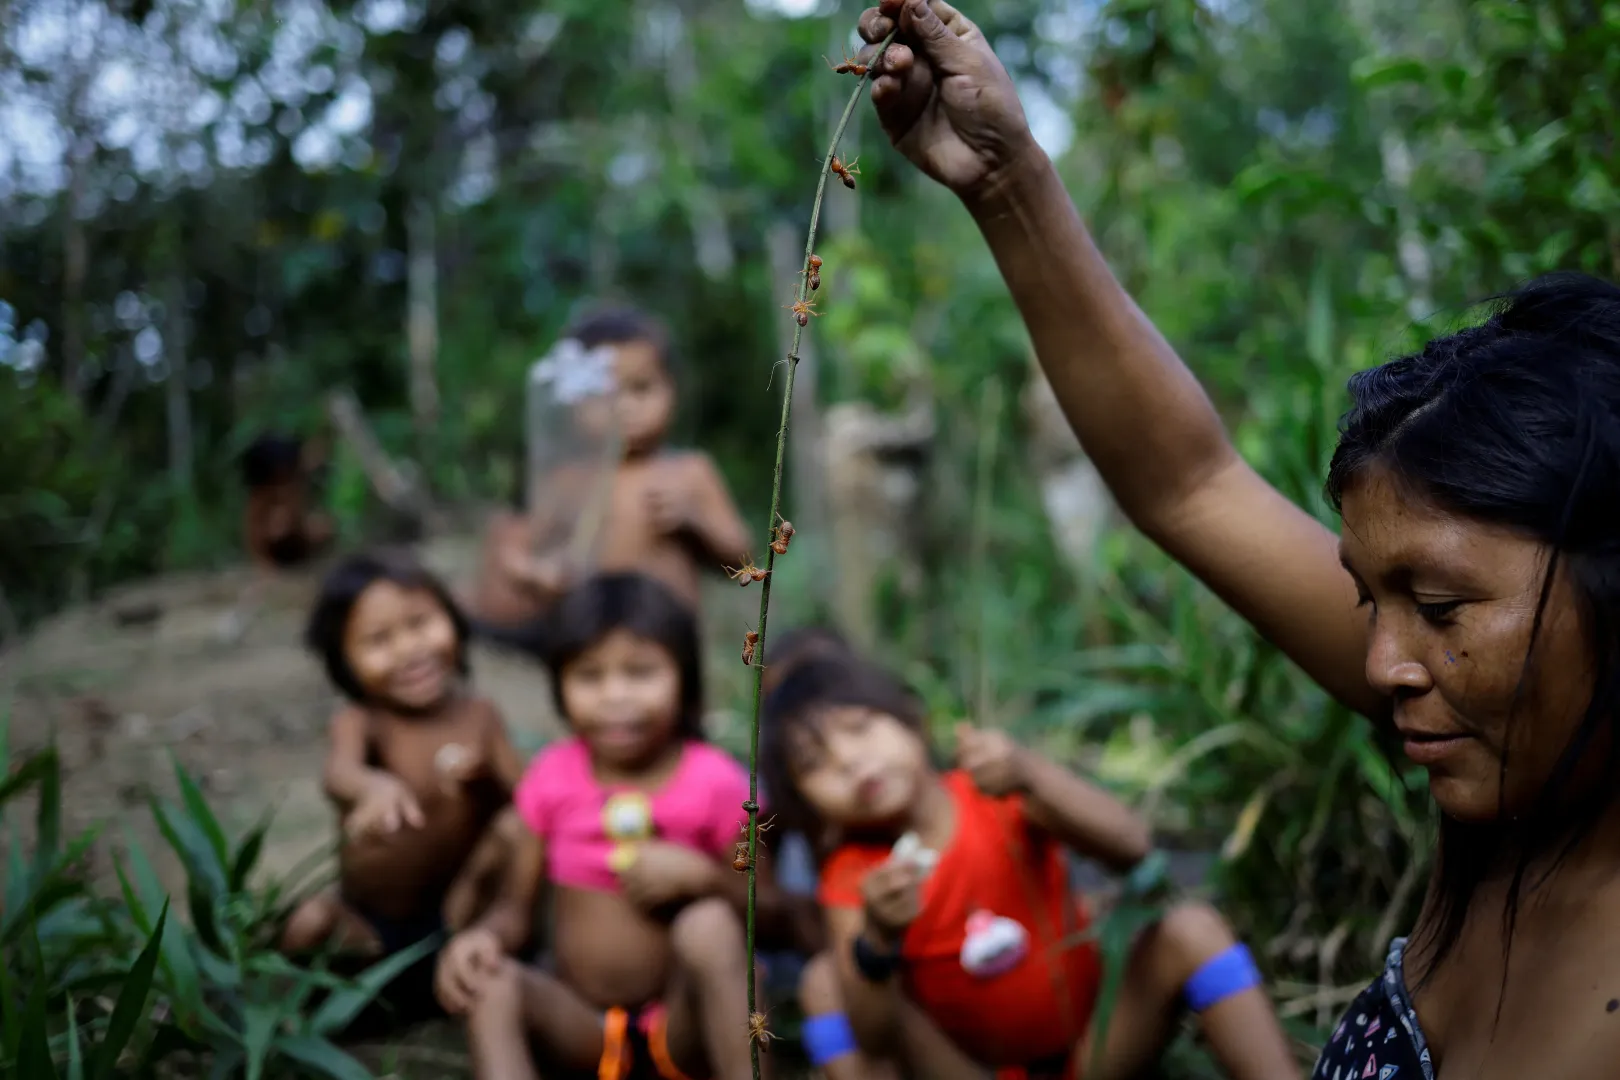 Egy indián nő hangyákat gyűjt, hogy aztán megegye őket. Ehhez egy hosszú botot tol be a hangyaboly járataiba – Fotó: Ueslei Marcelino / Reuters